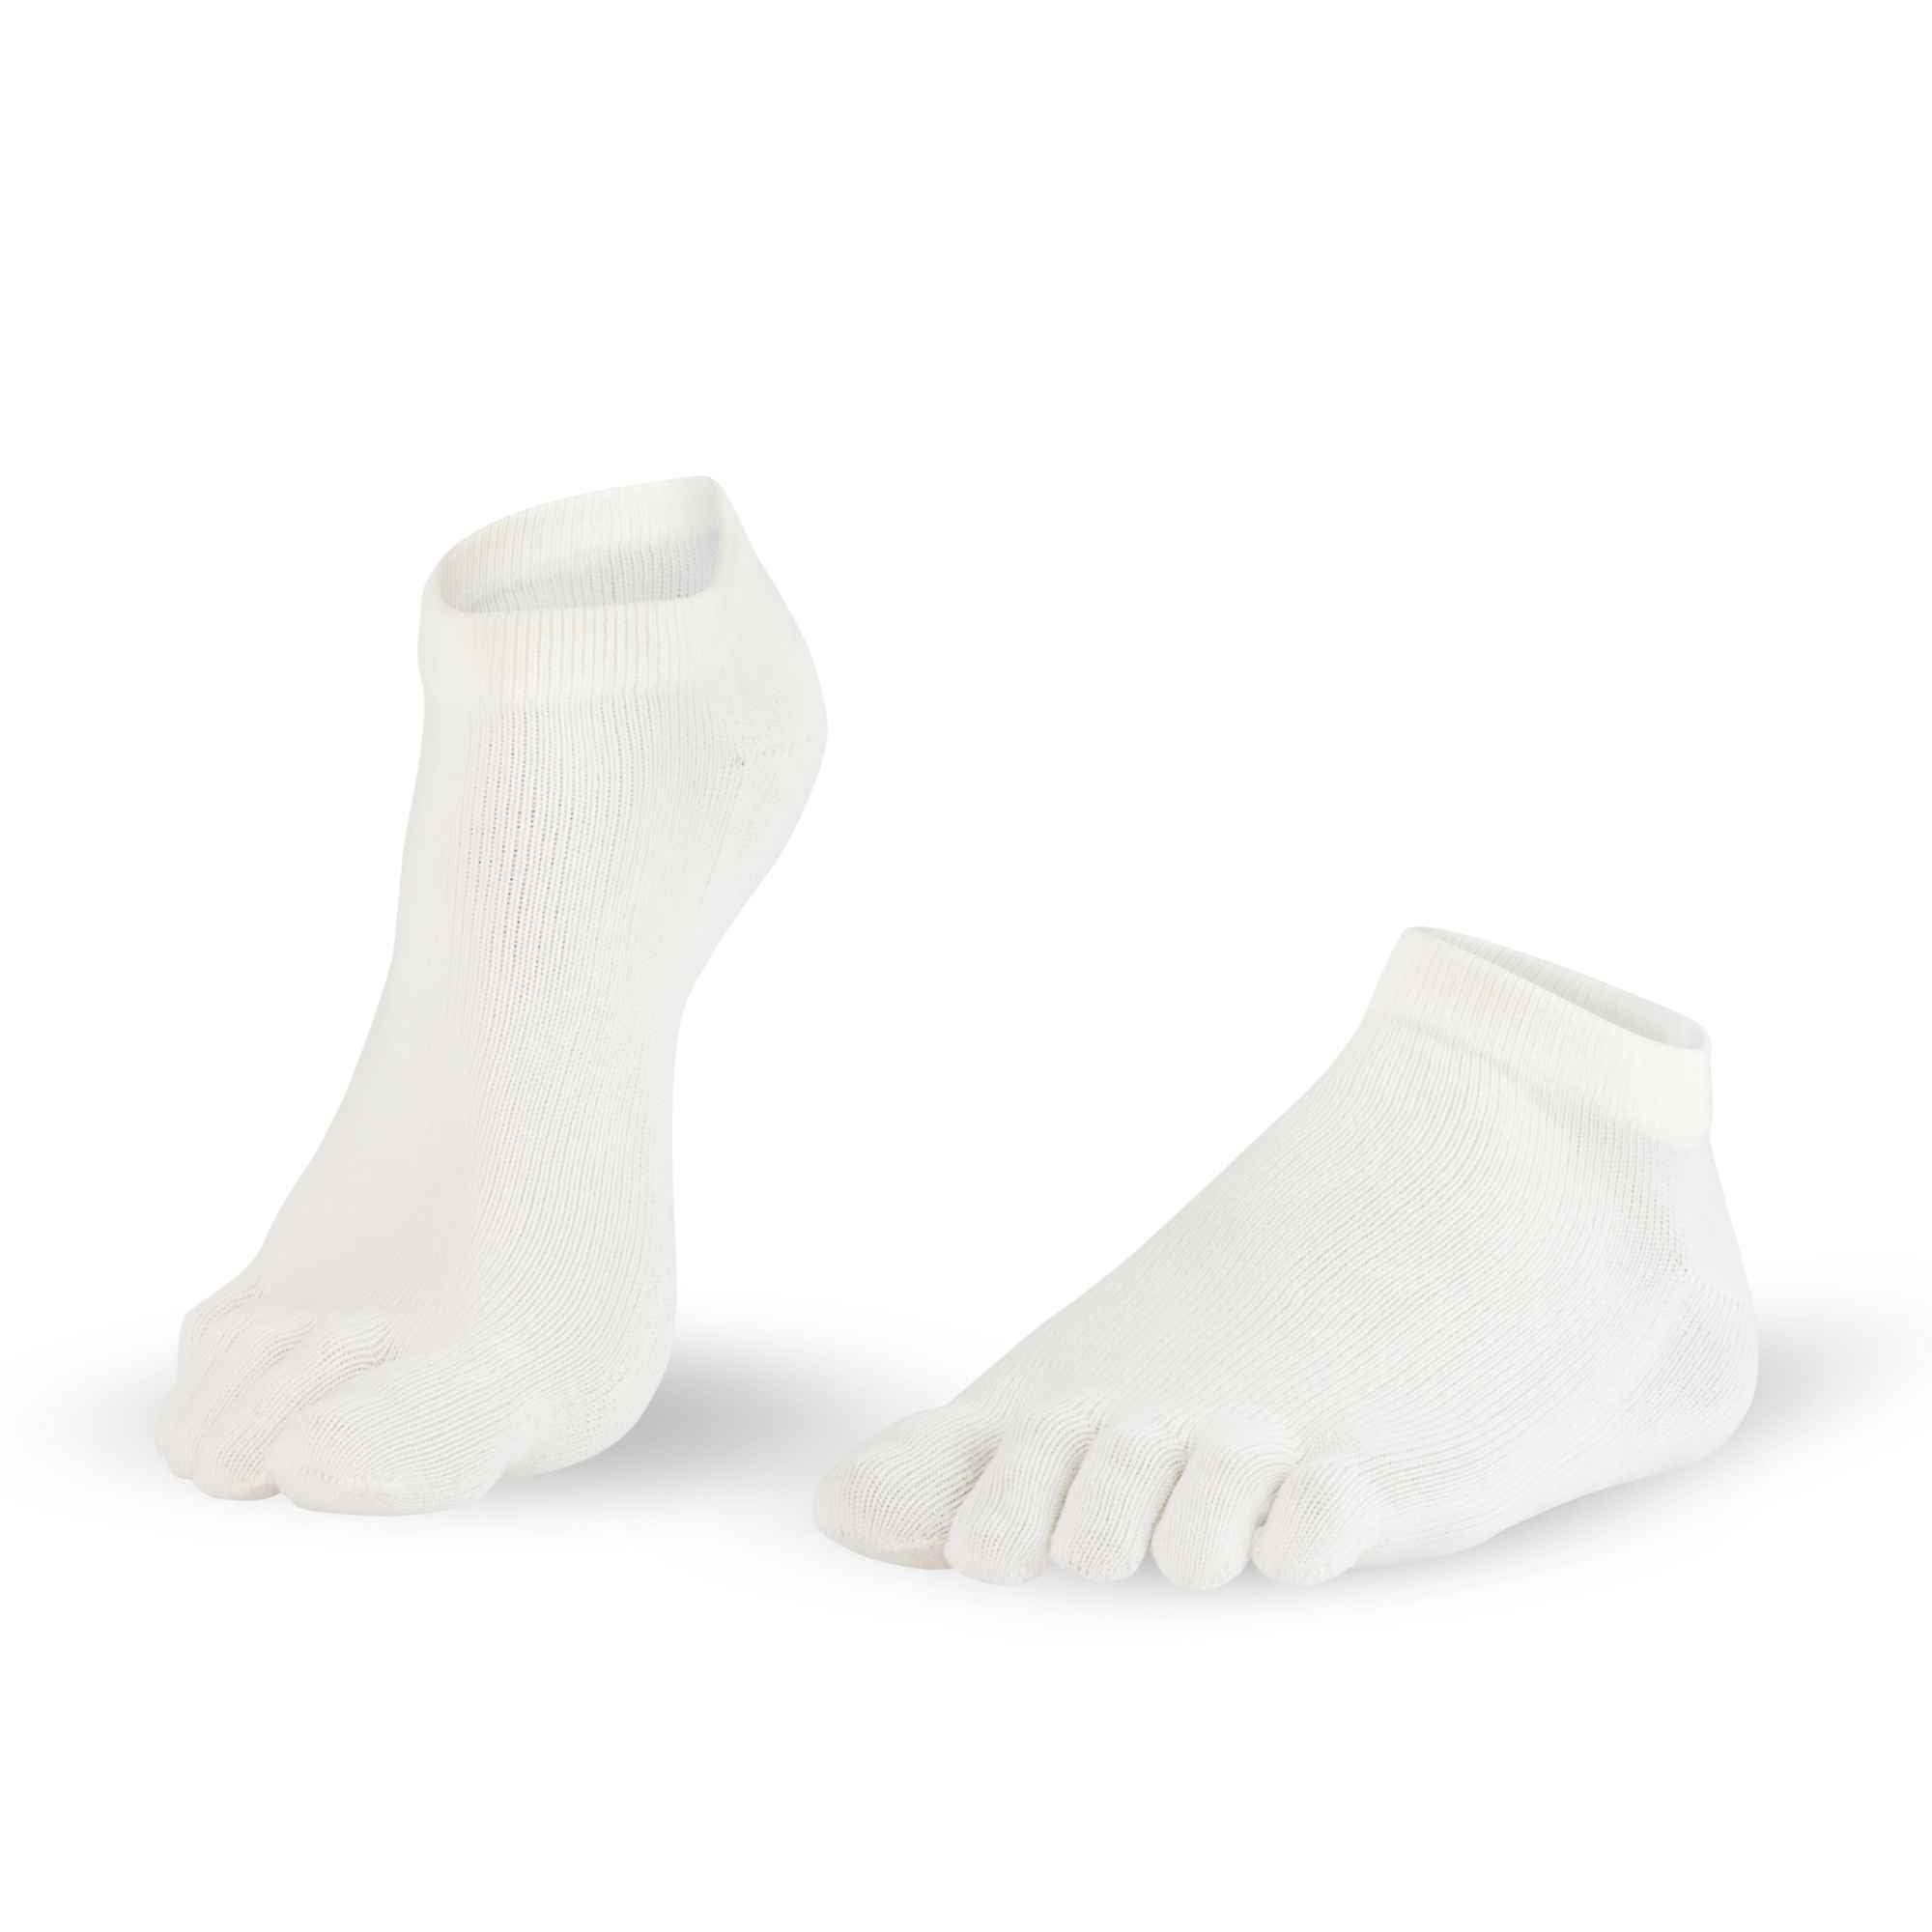 7-Dr-Foot-Silver-Protect-Sneaker chaussettes à orteils blanc hommes femmes fibre d'argent